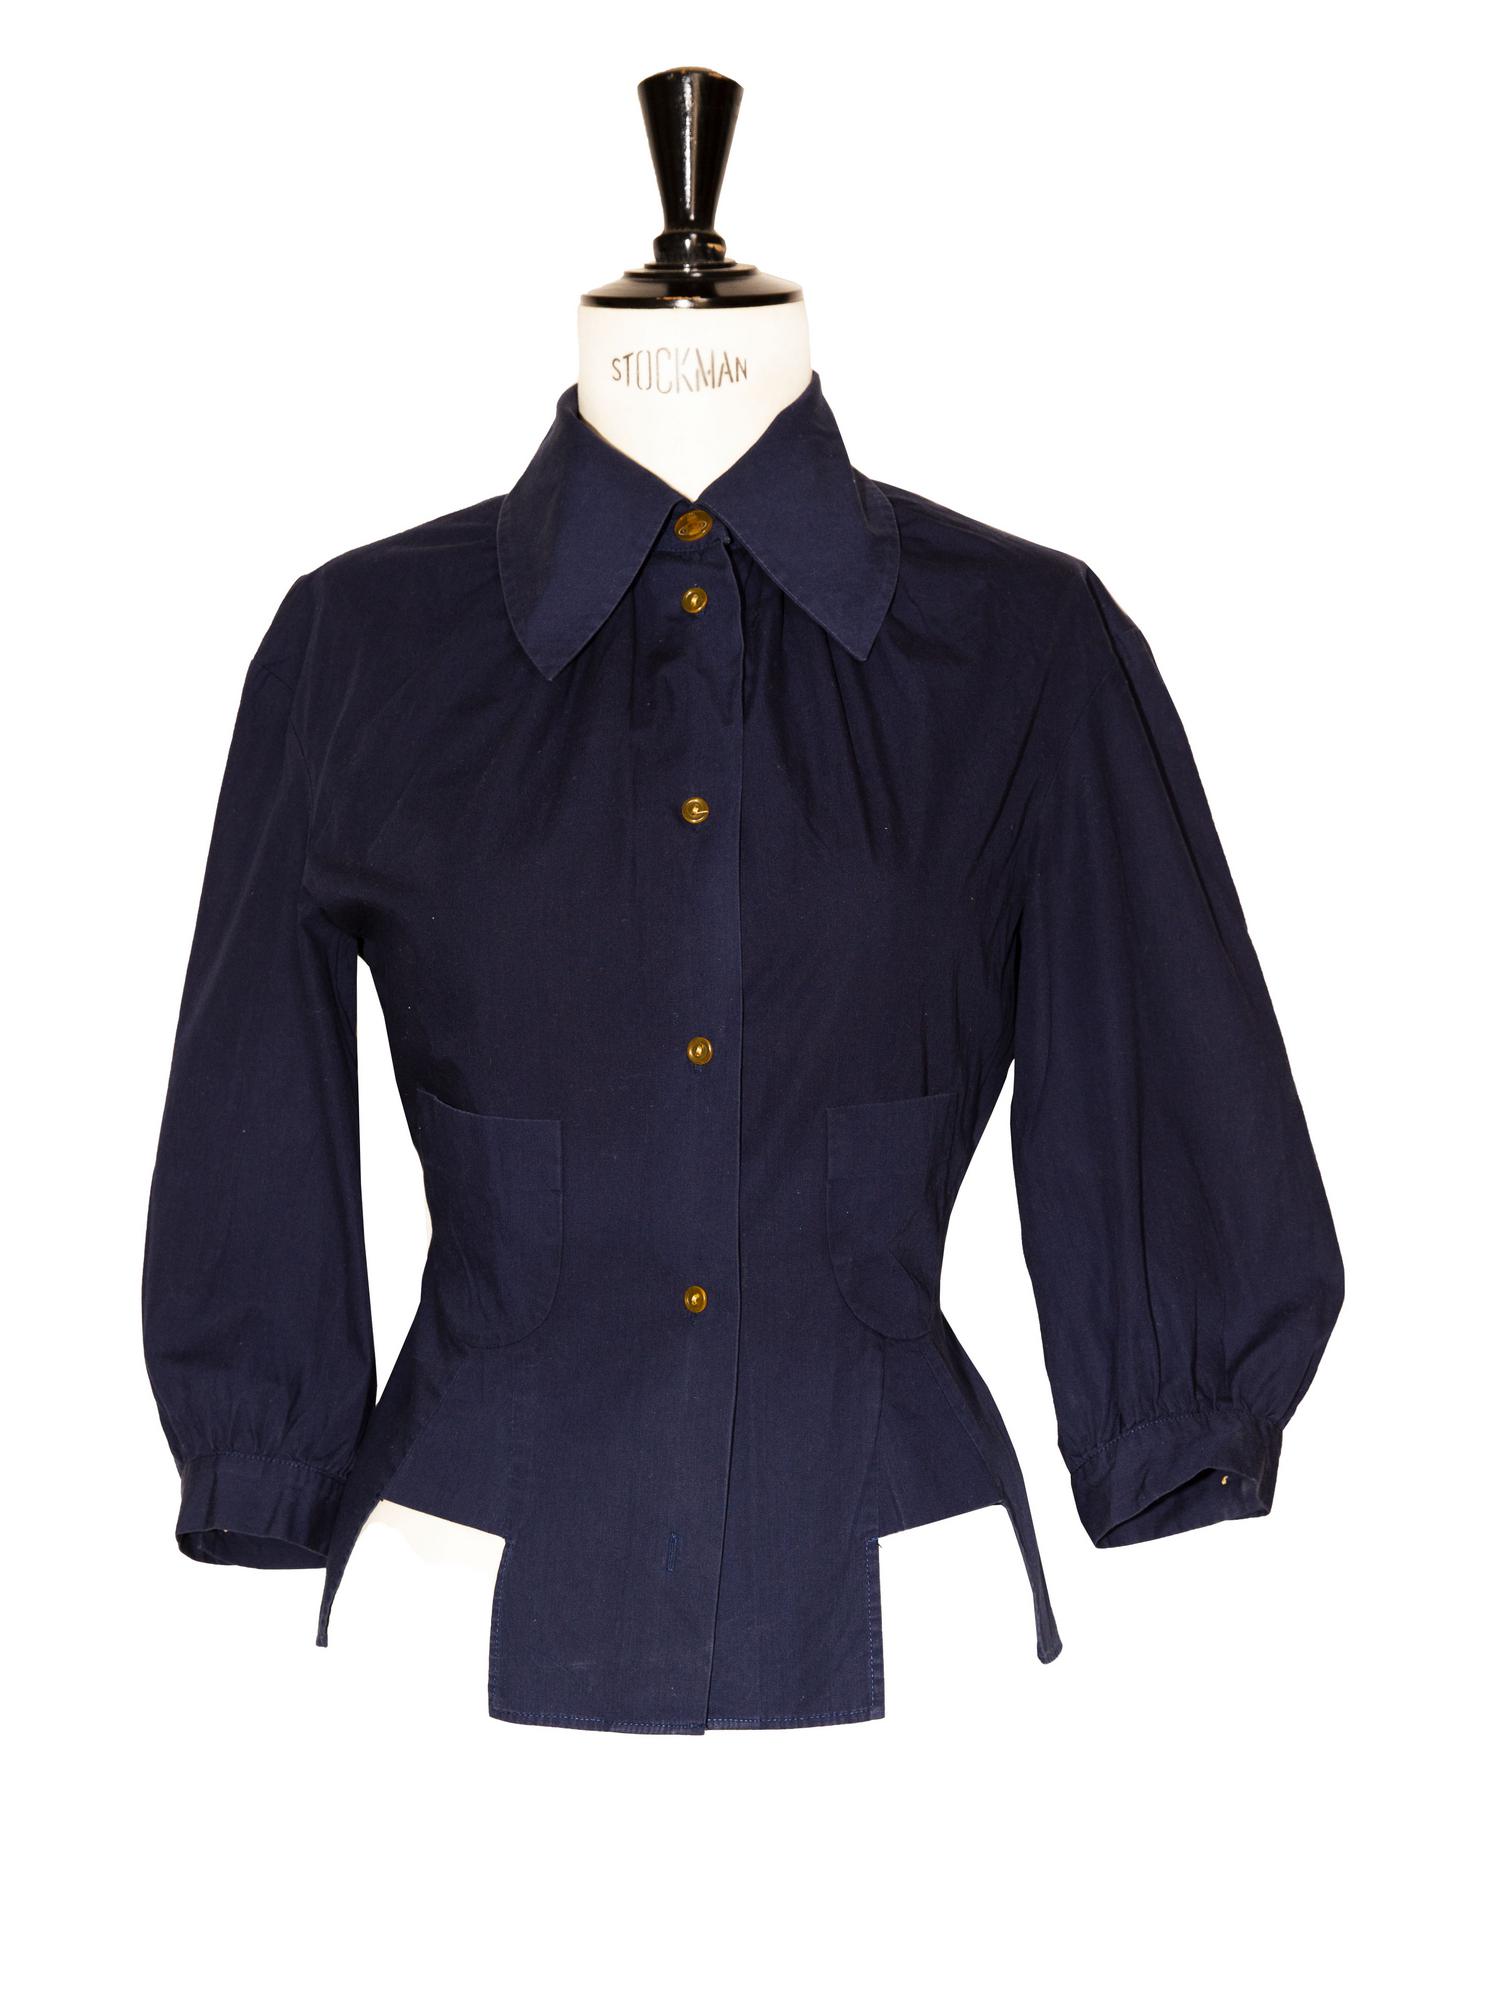 Vivienne Westwood PEASANT SHIRT Description: Blue cotton popelline shirt. Two...